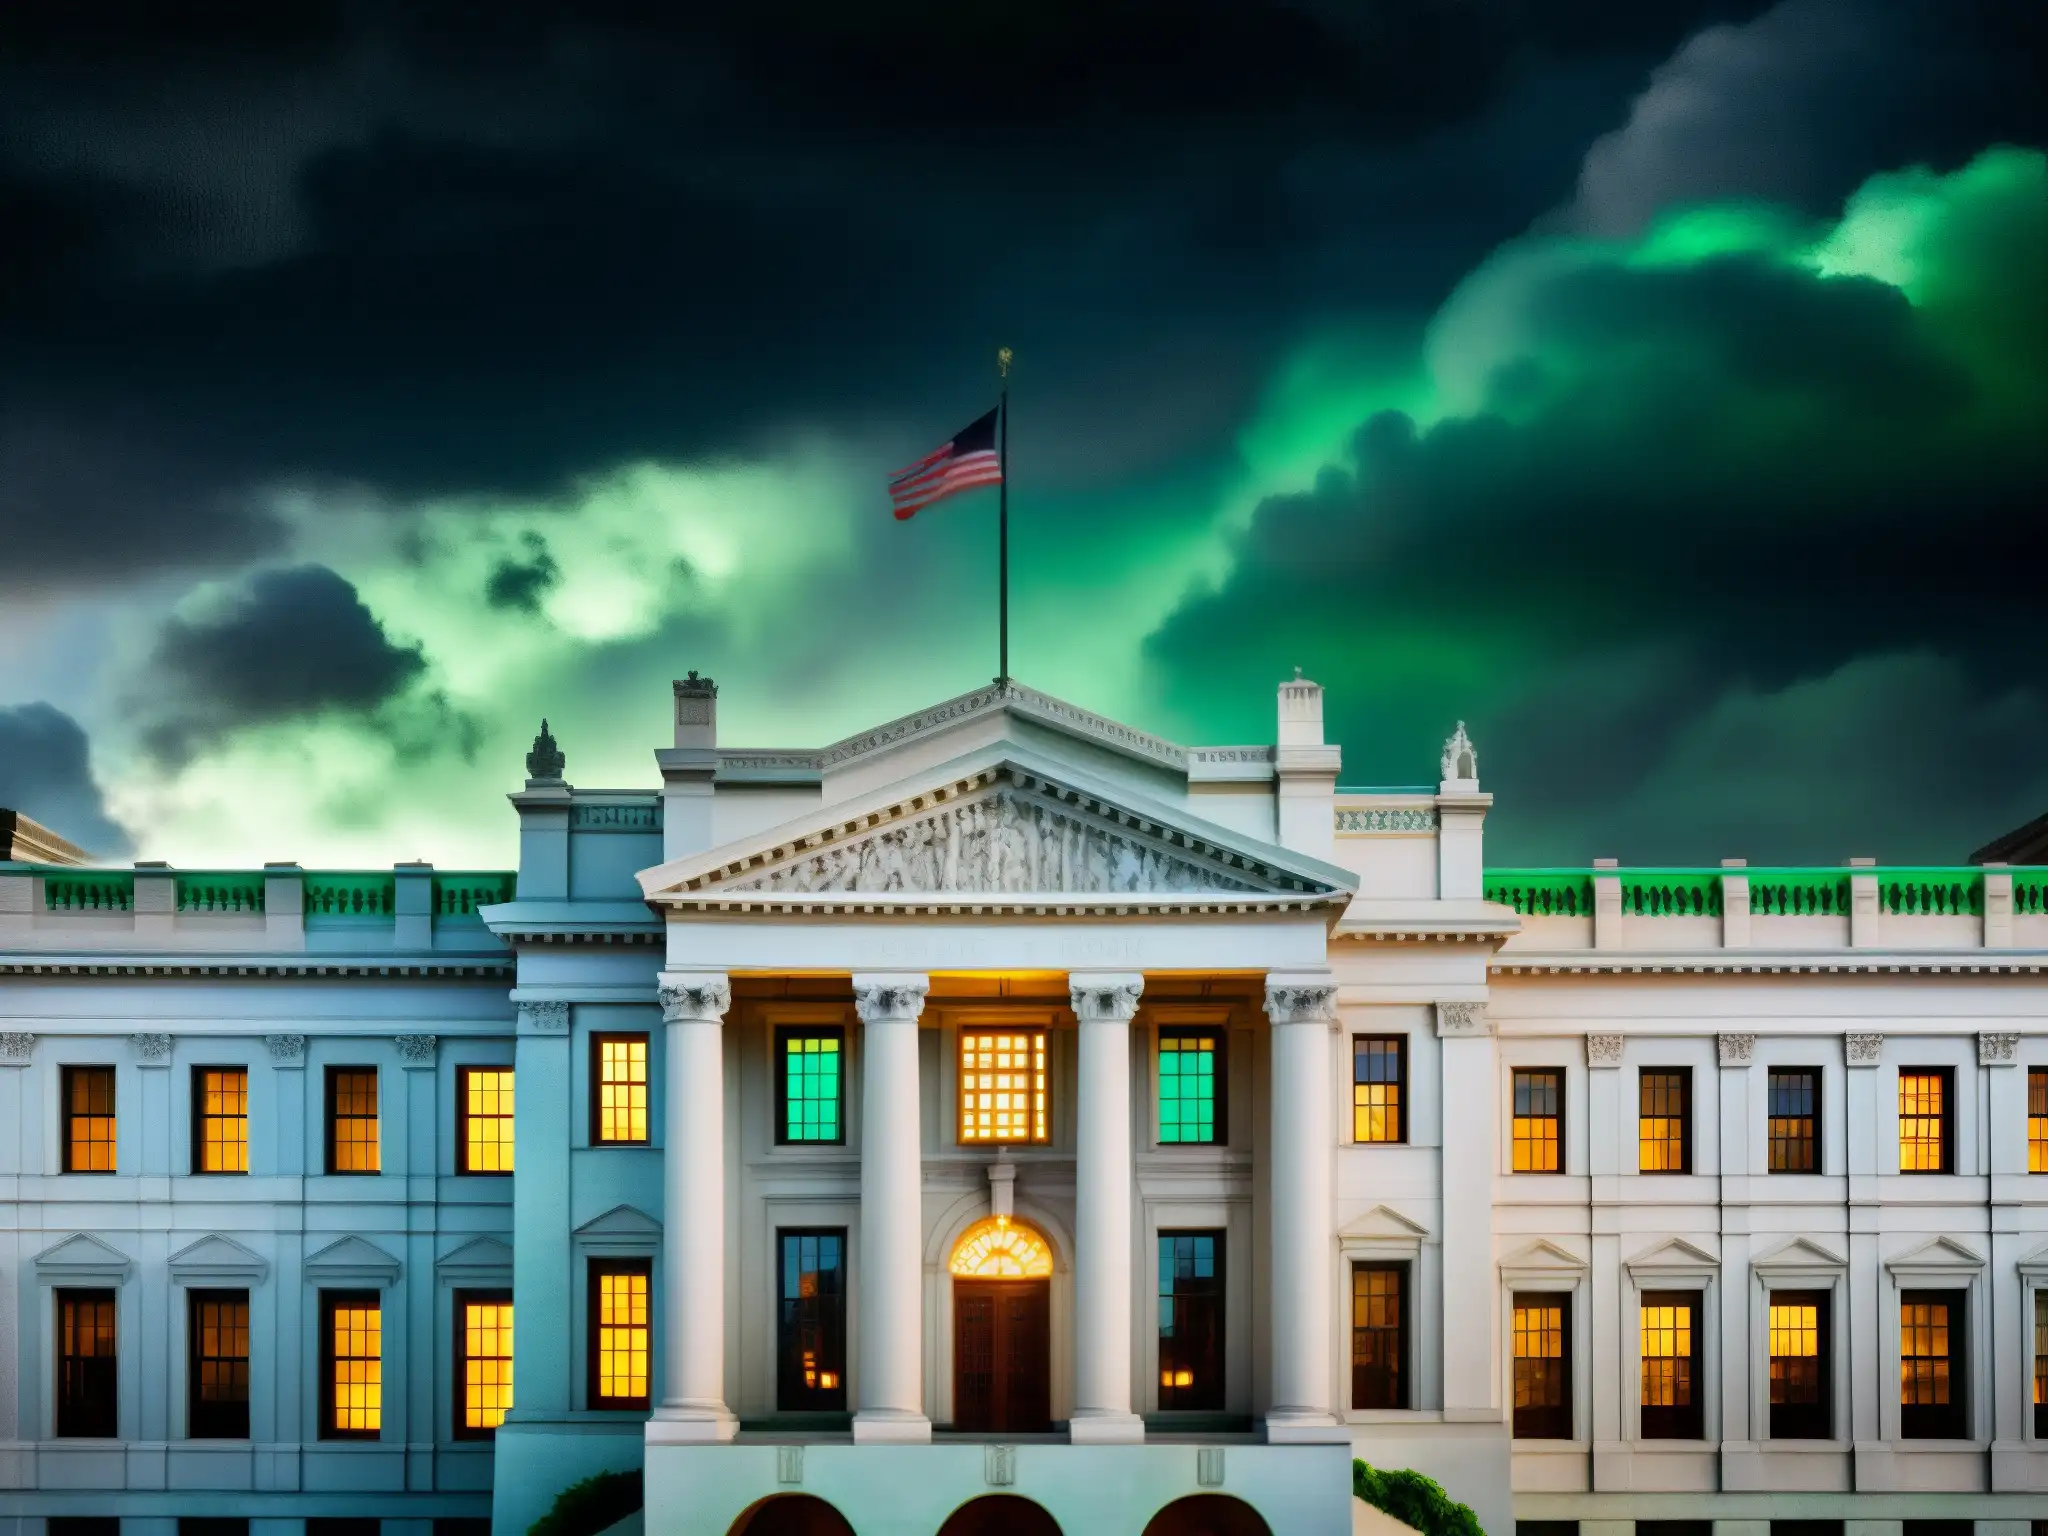 Imponente edificio gubernamental iluminado por una misteriosa luz verde, rodeado de nubes tormentosas